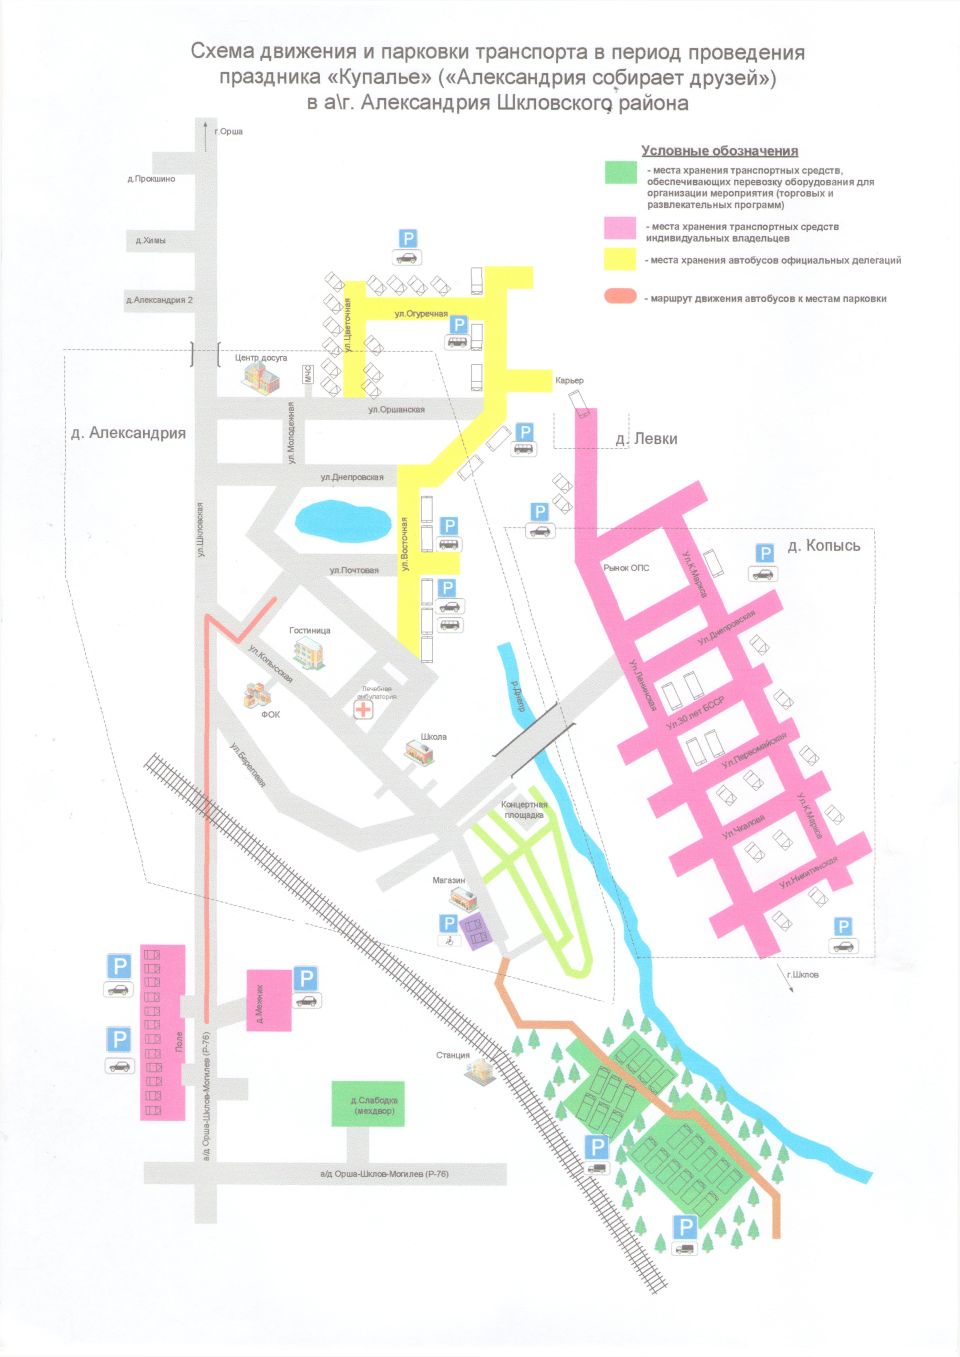 Схема движения и парковки транспорта в период проведения праздника “Купалье”